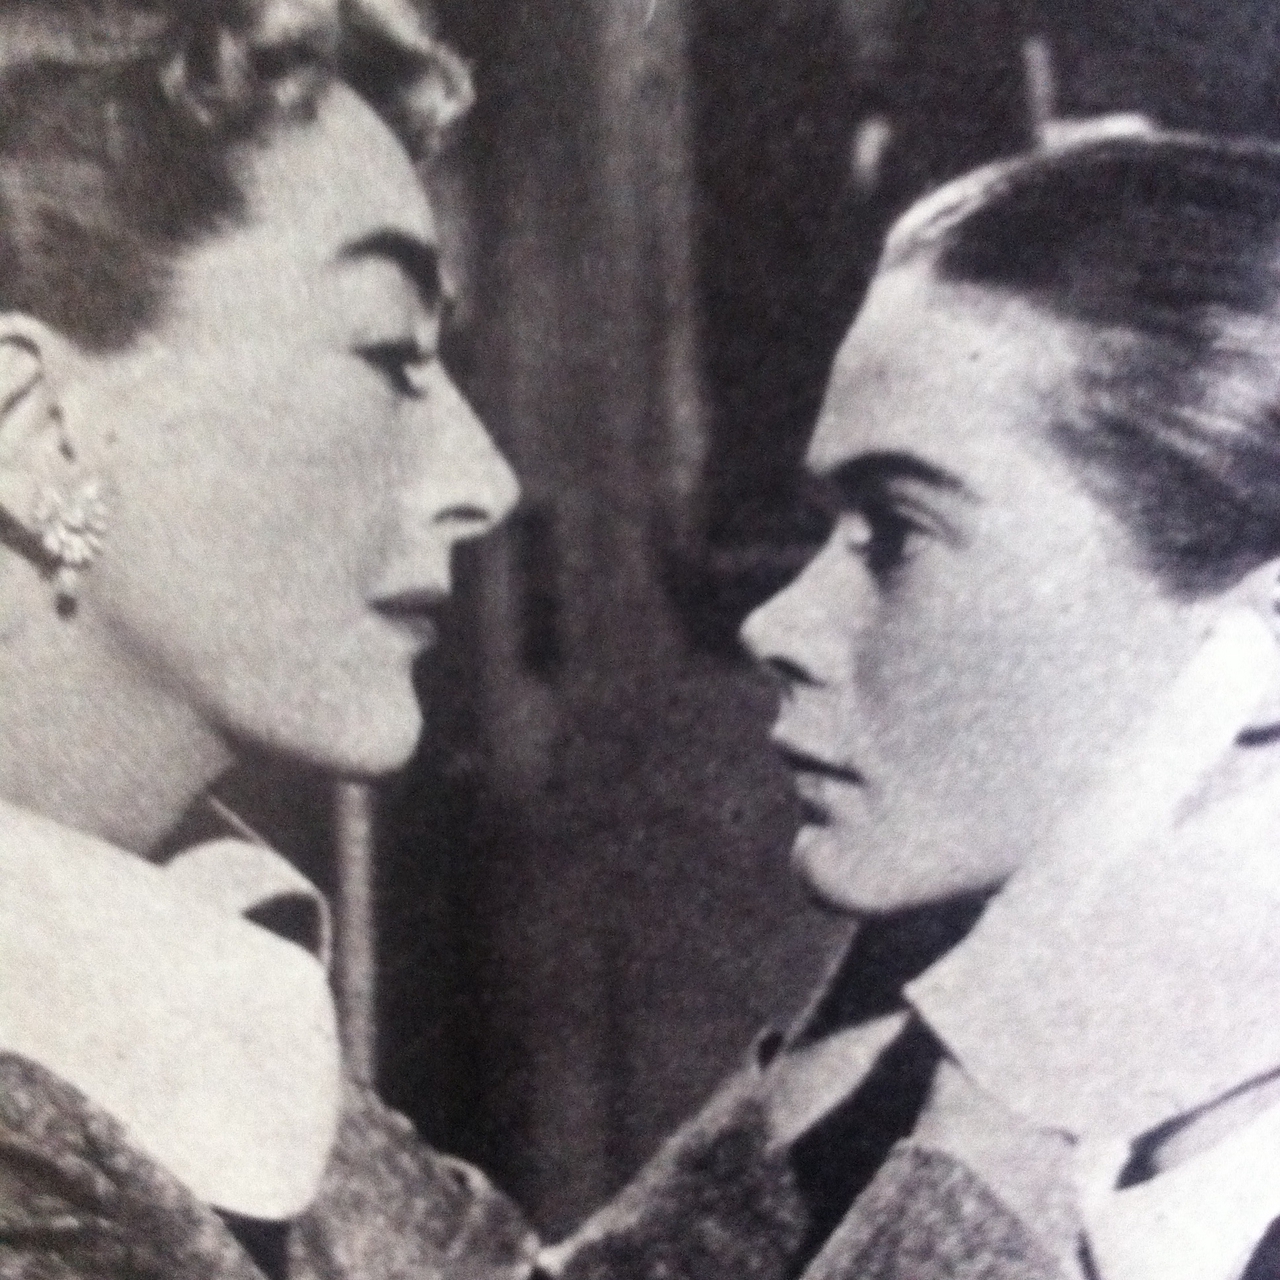  فیلم سینمایی The Story of Esther Costello با حضور Joan Crawford و Heather Sears